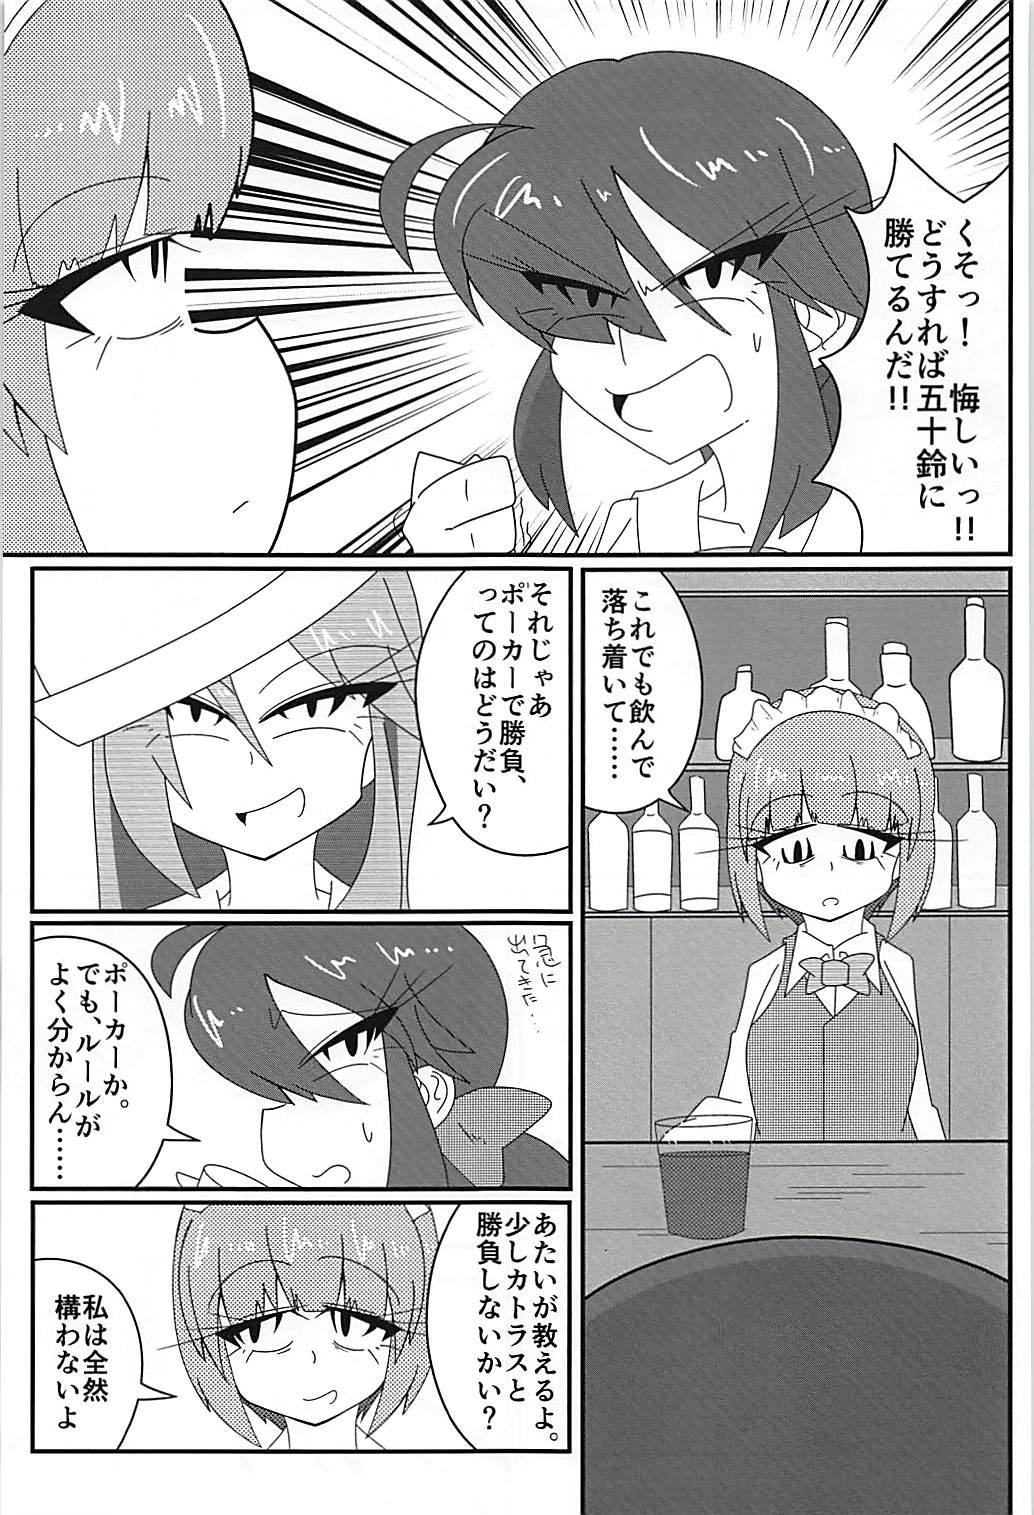 Cogida Arakuremono no Leader, Haiboku! - Girls und panzer Teasing - Page 2